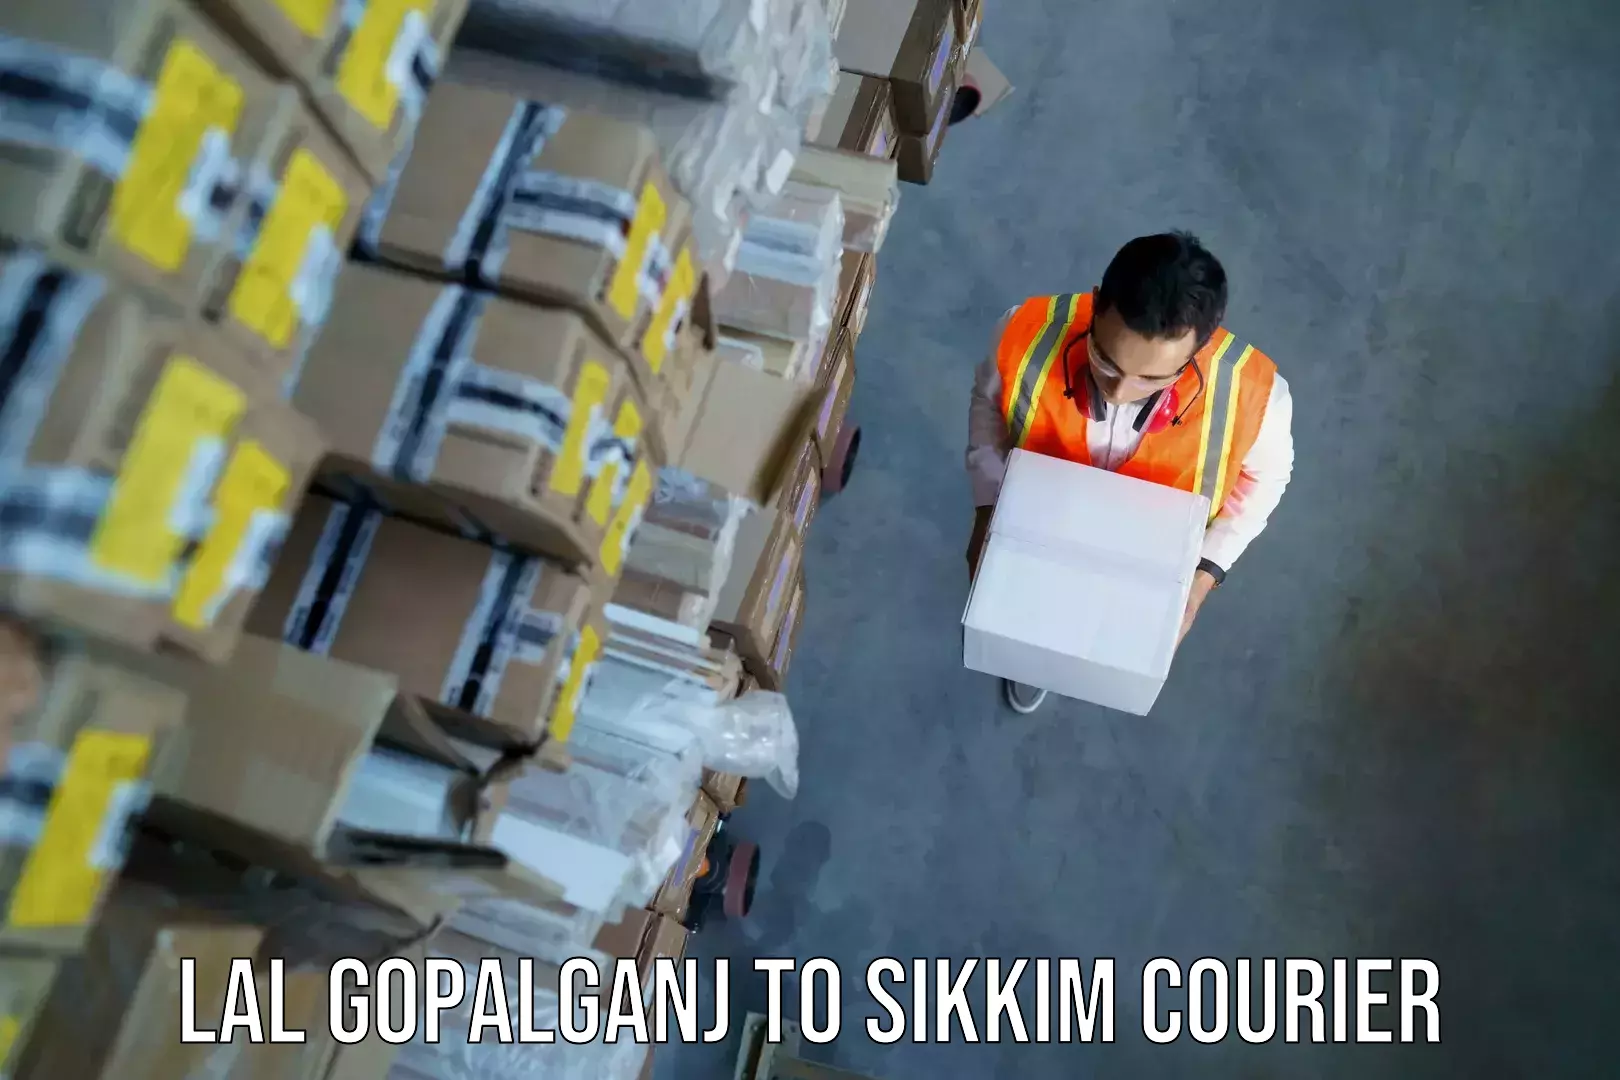 Luggage forwarding service Lal Gopalganj to East Sikkim